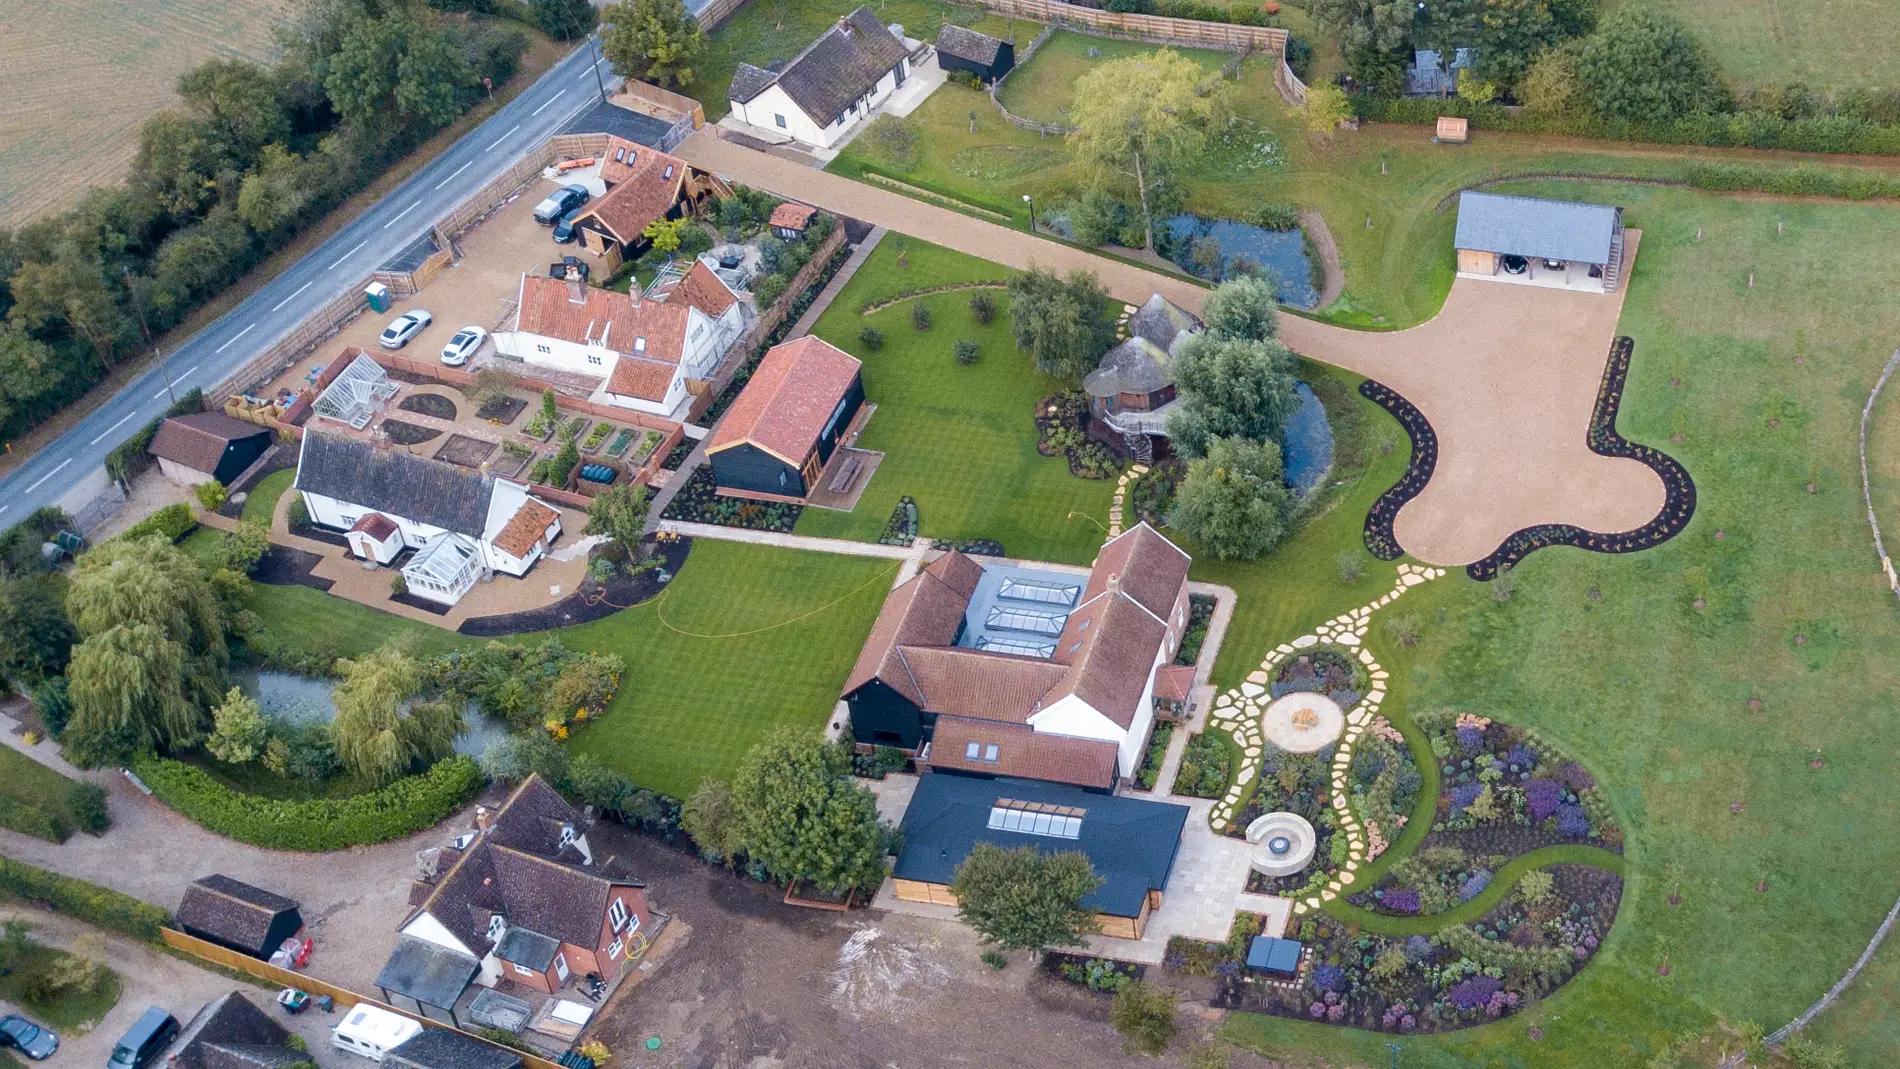 Vista aérea de Sheeranville, la granja de Suffolk de Ed Sheeran